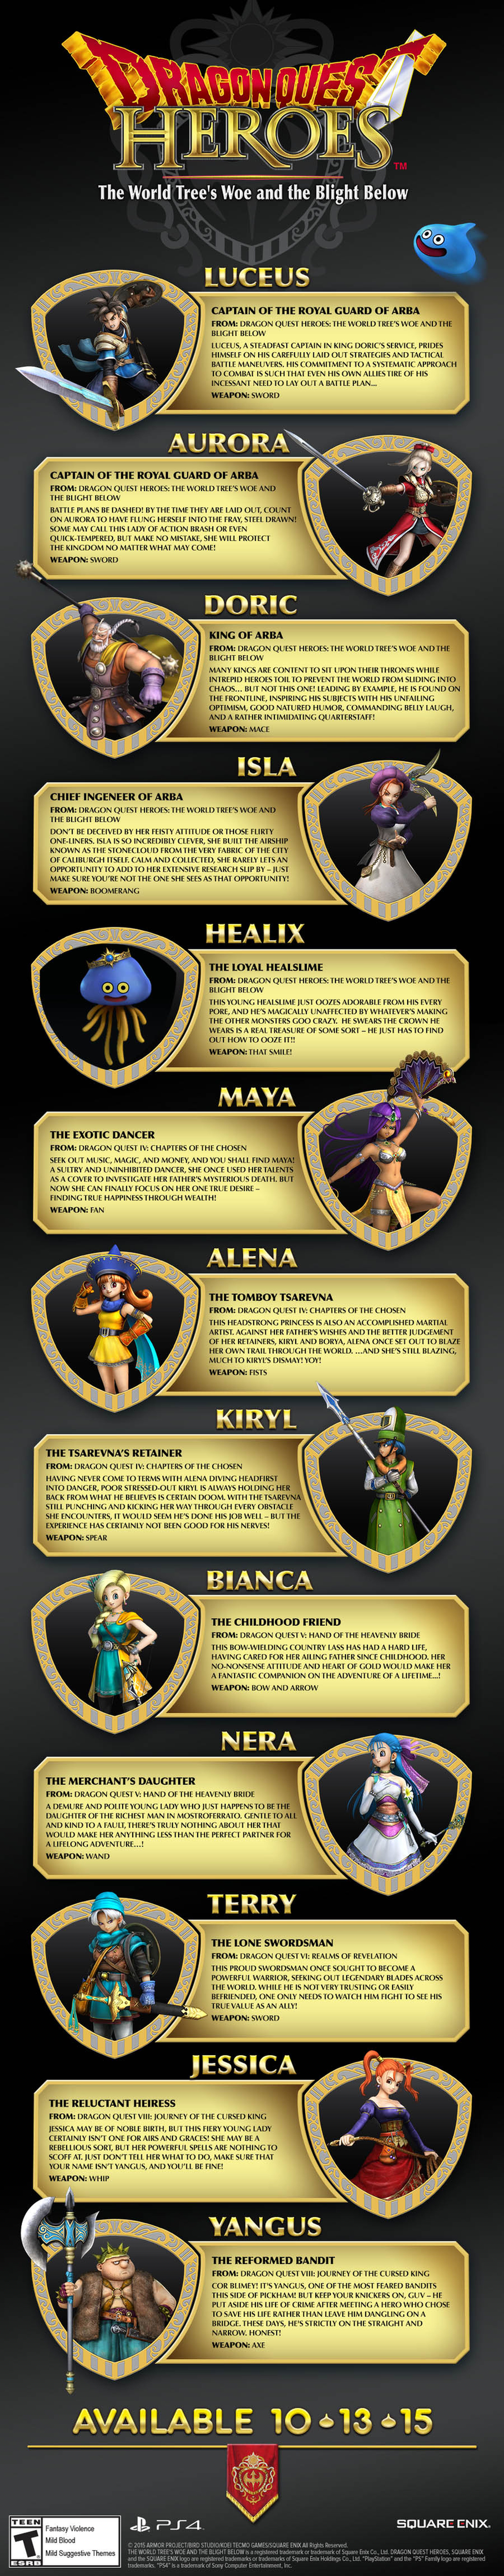 Dragon Quest Heroes, sus personajes en una infografía